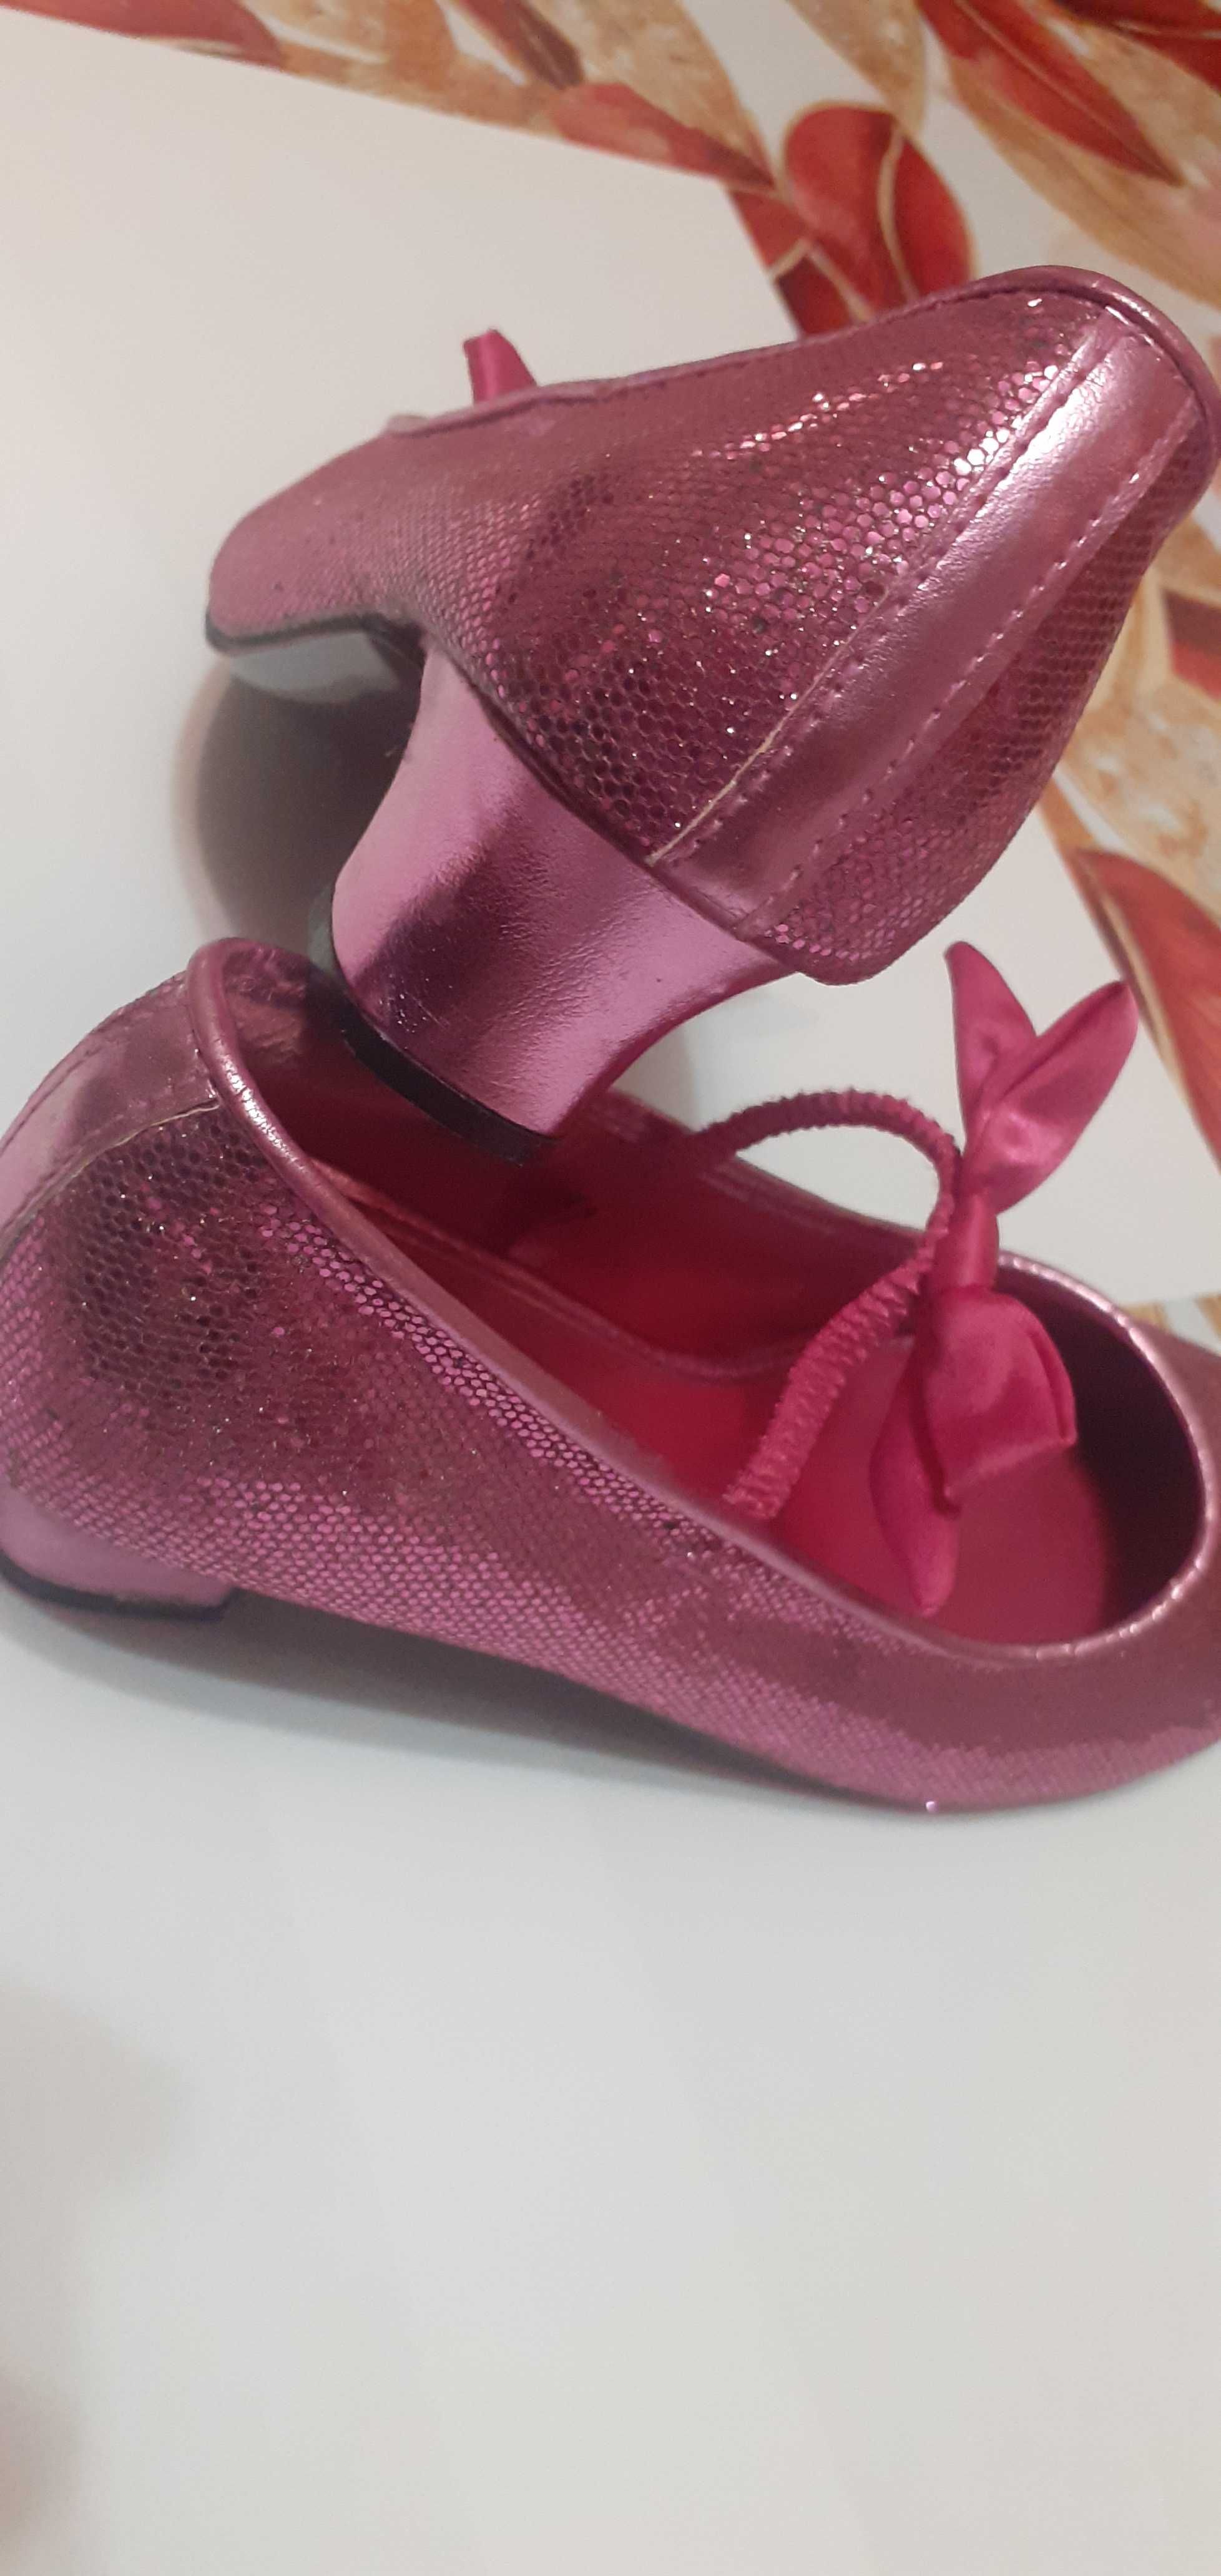 Туфли для Принцессы/праздничные. 21 см по стельке